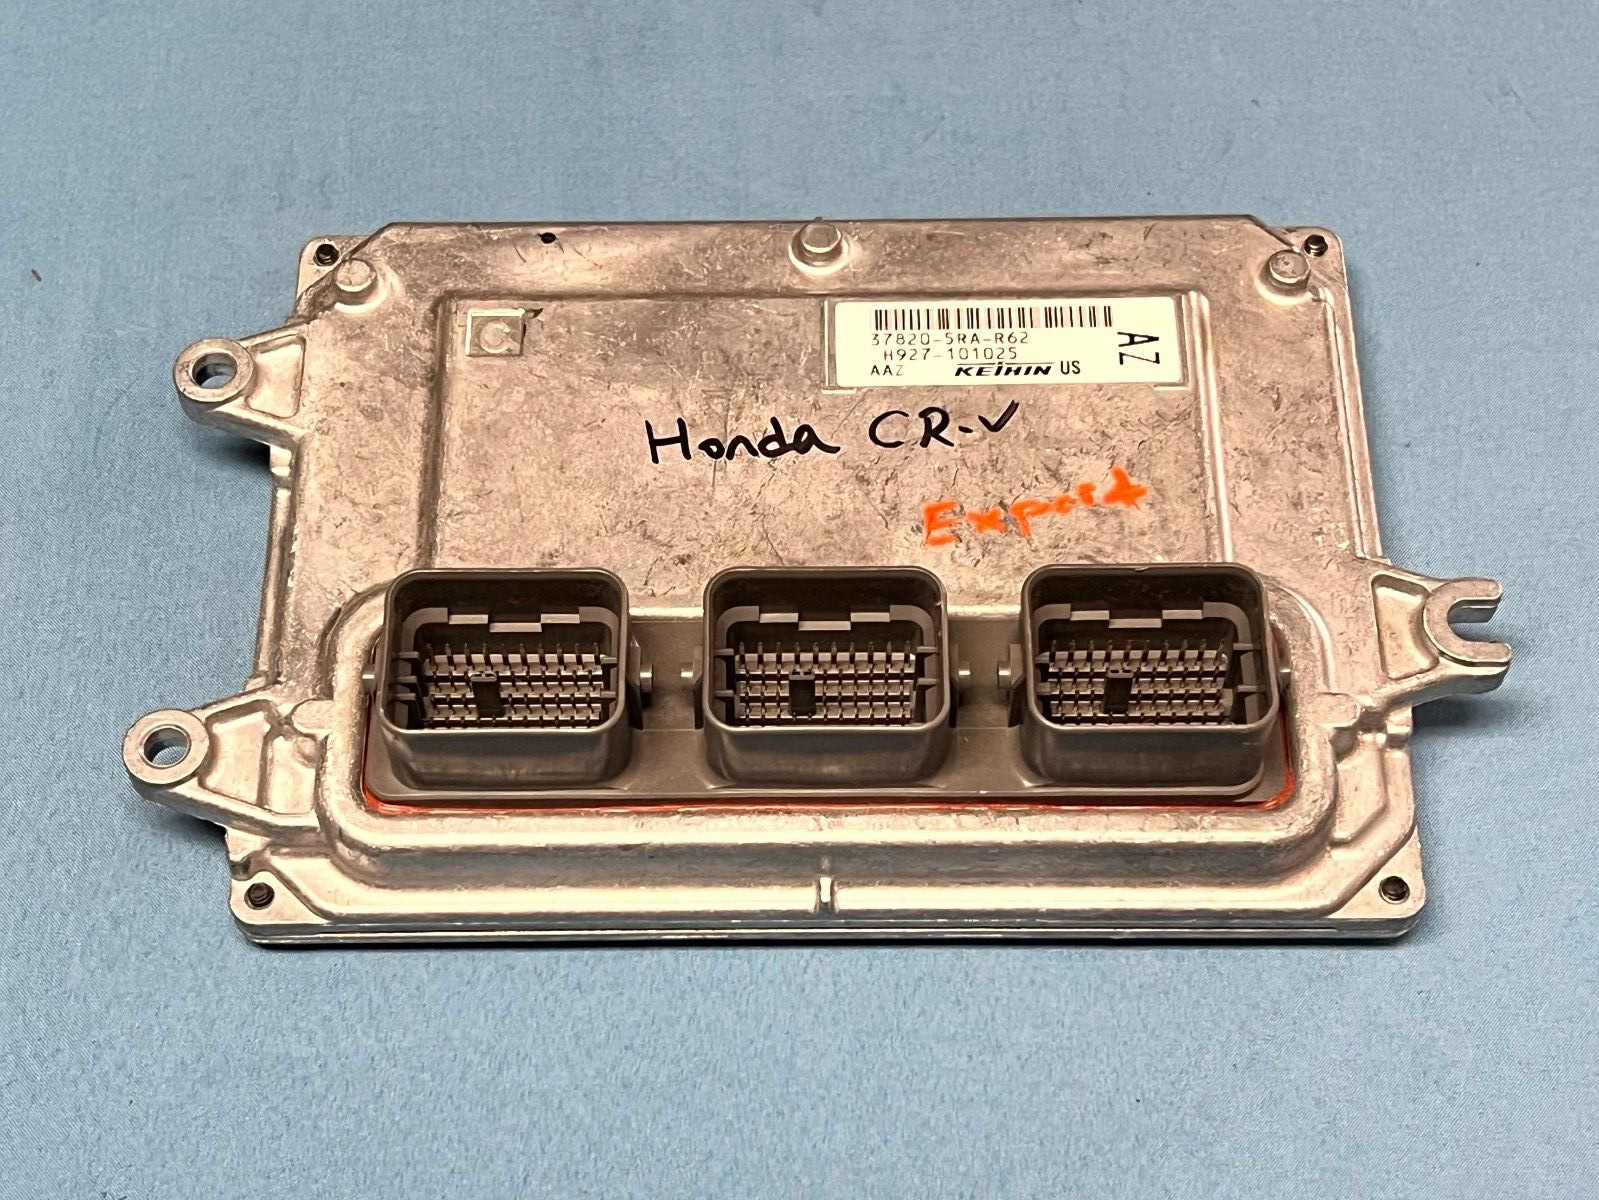 21-22 HONDA CR-V POWERTRAIN CONTROL MODULE COMPUTER ECM 37820-5RA-R62 OEM EXPORT